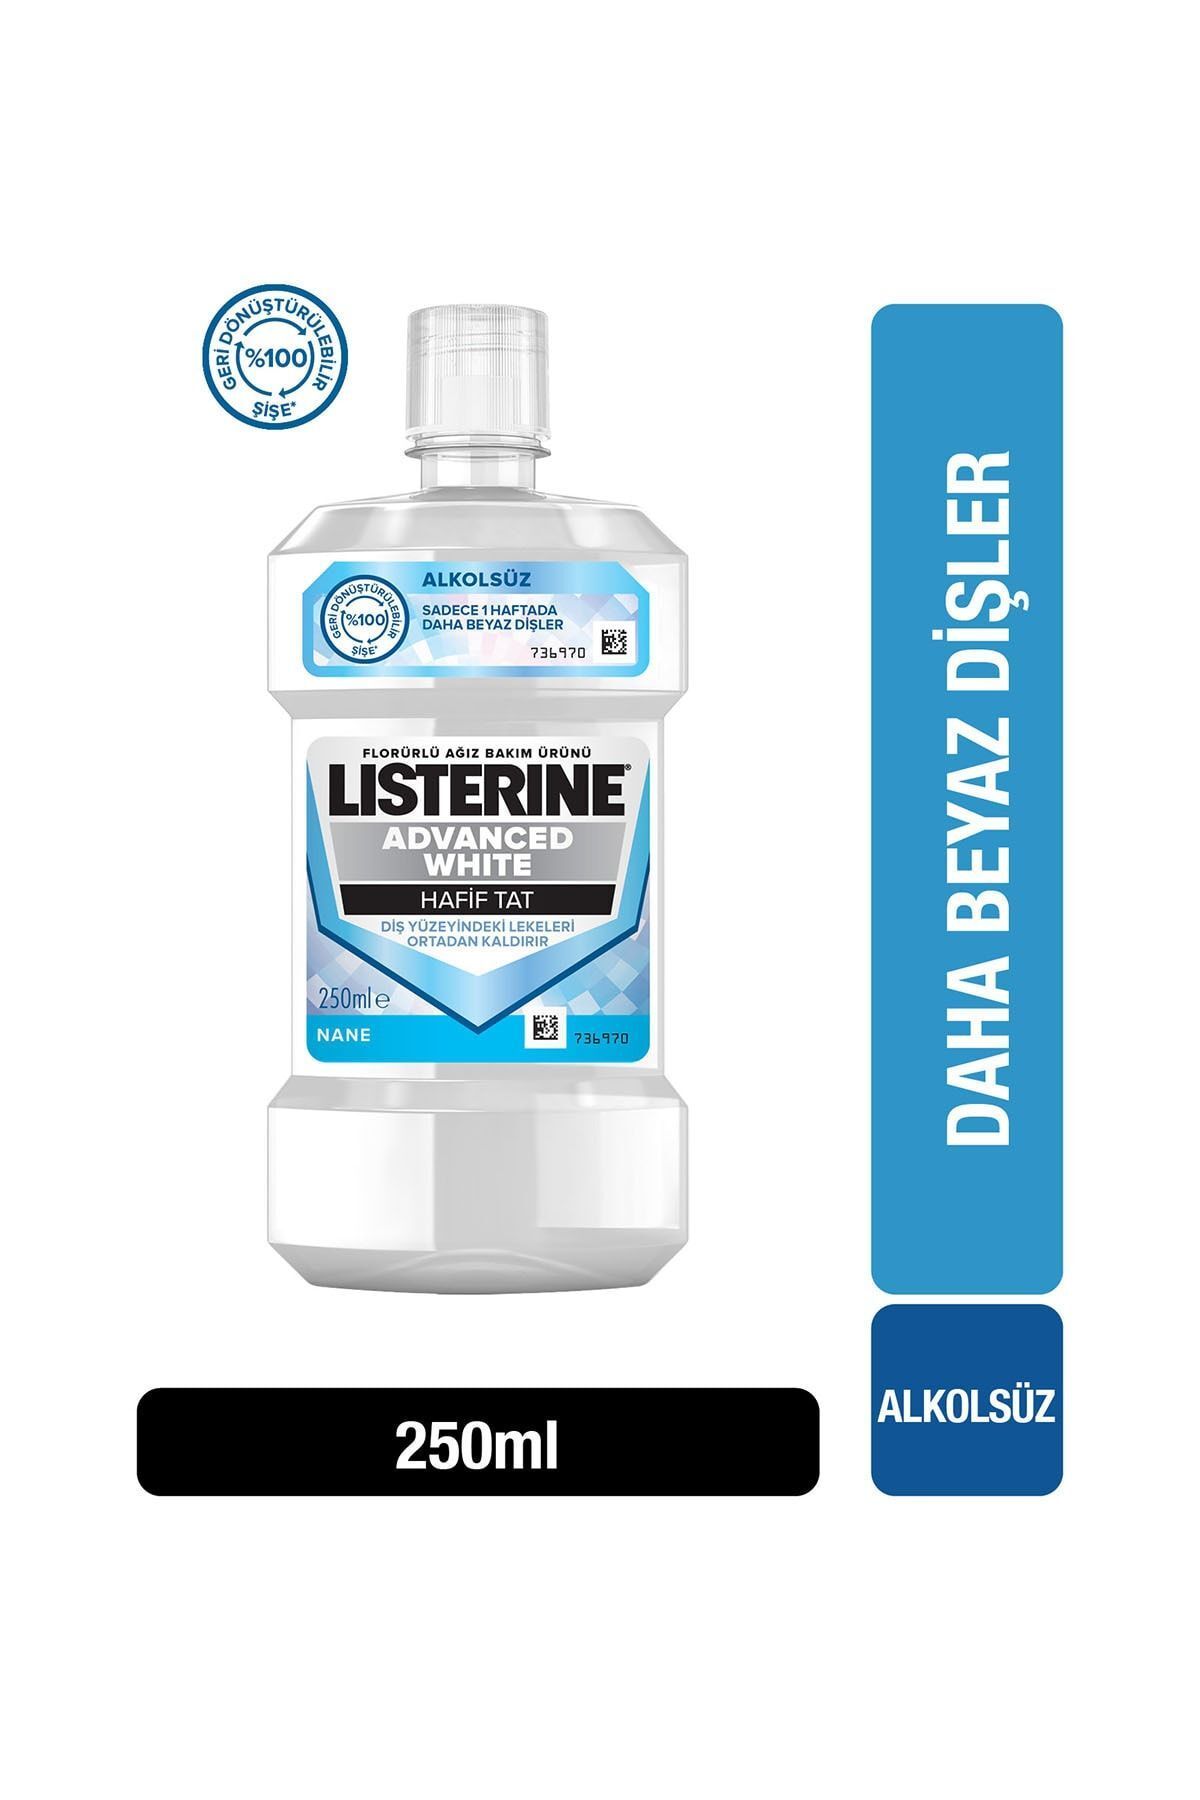 Listerine Advanced White Hafif Tat Ağiz Bakim Suyu 250 ml